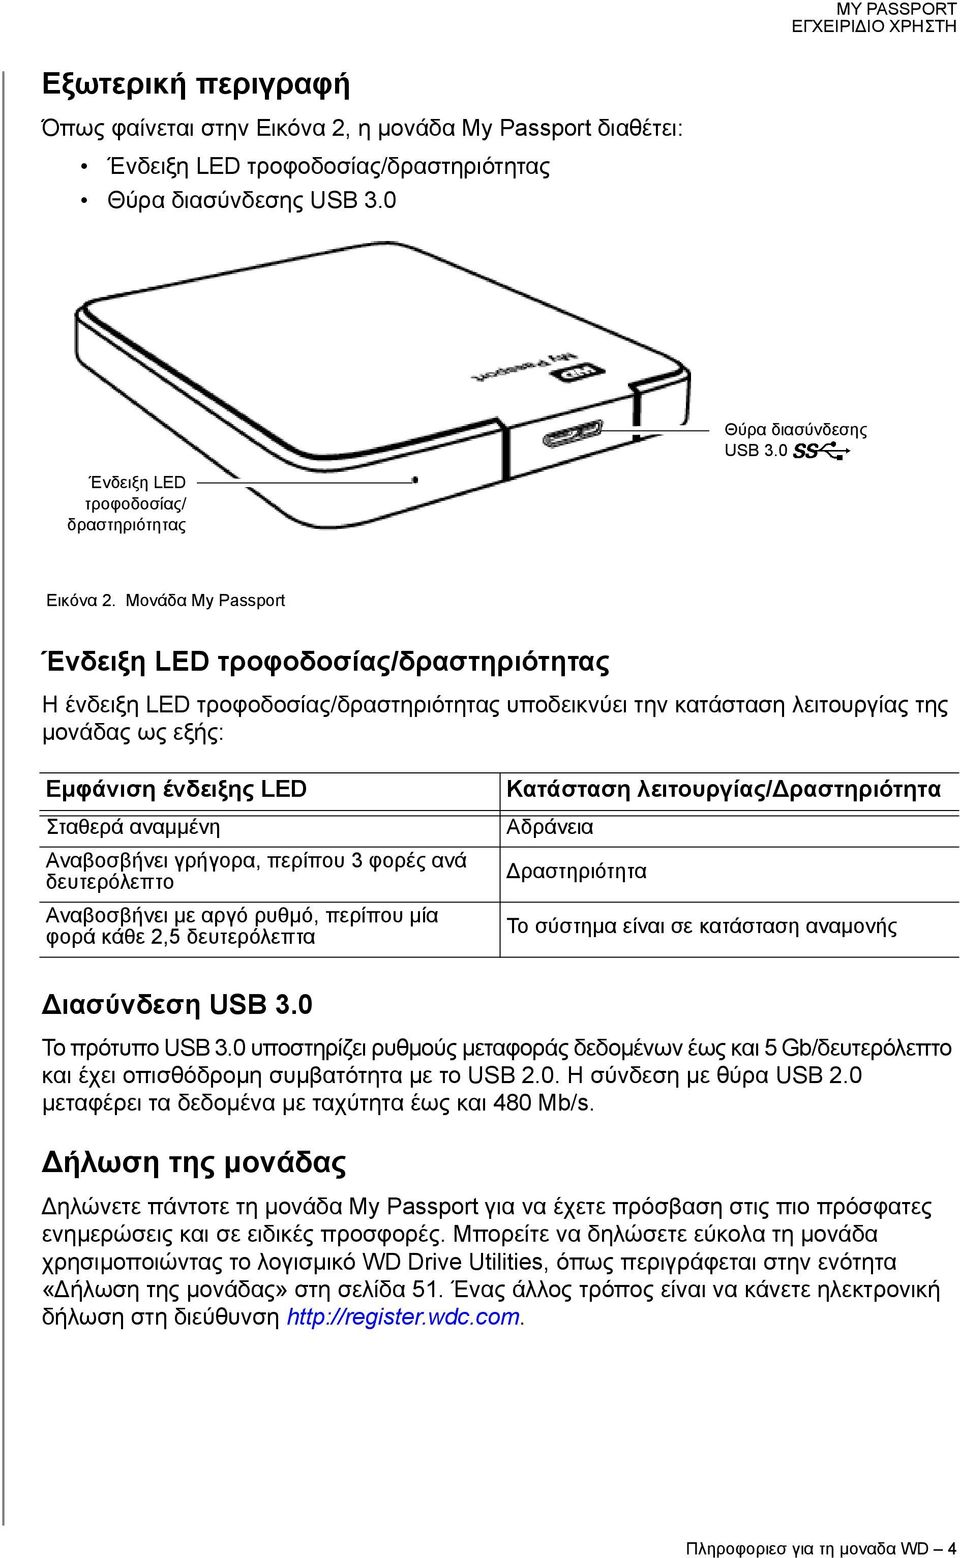 Μονάδα My Passport Ένδειξη LED τροφοδοσίας/δραστηριότητας Η ένδειξη LED τροφοδοσίας/δραστηριότητας υποδεικνύει την κατάσταση λειτουργίας της μονάδας ως εξής: Εμφάνιση ένδειξης LED Σταθερά αναμμένη